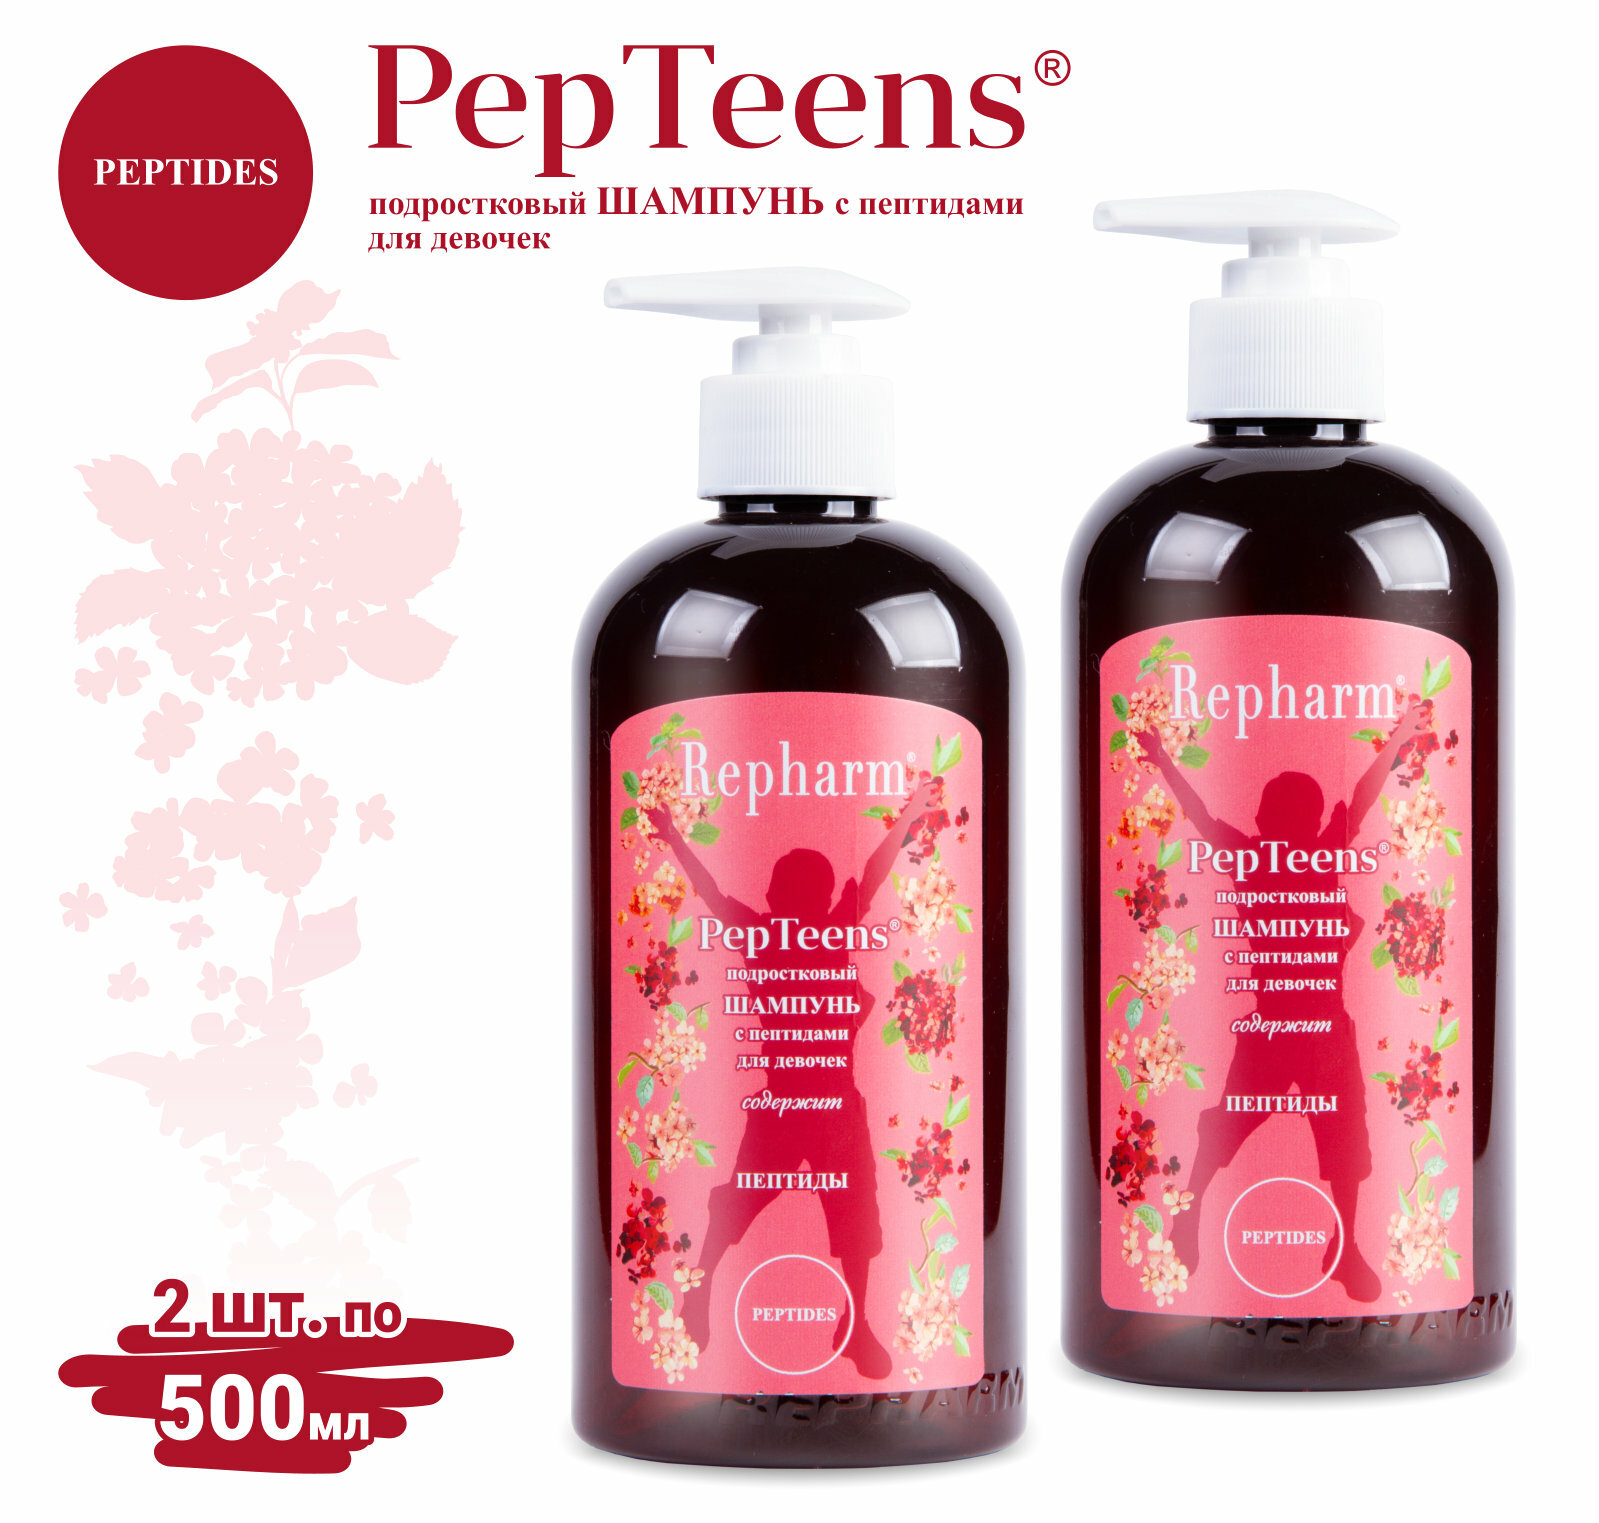 Шампунь для девочек Repharm PepTeens ® (пептинс) подростковый с пептидами с дозатором, 500 мл - 2 шт